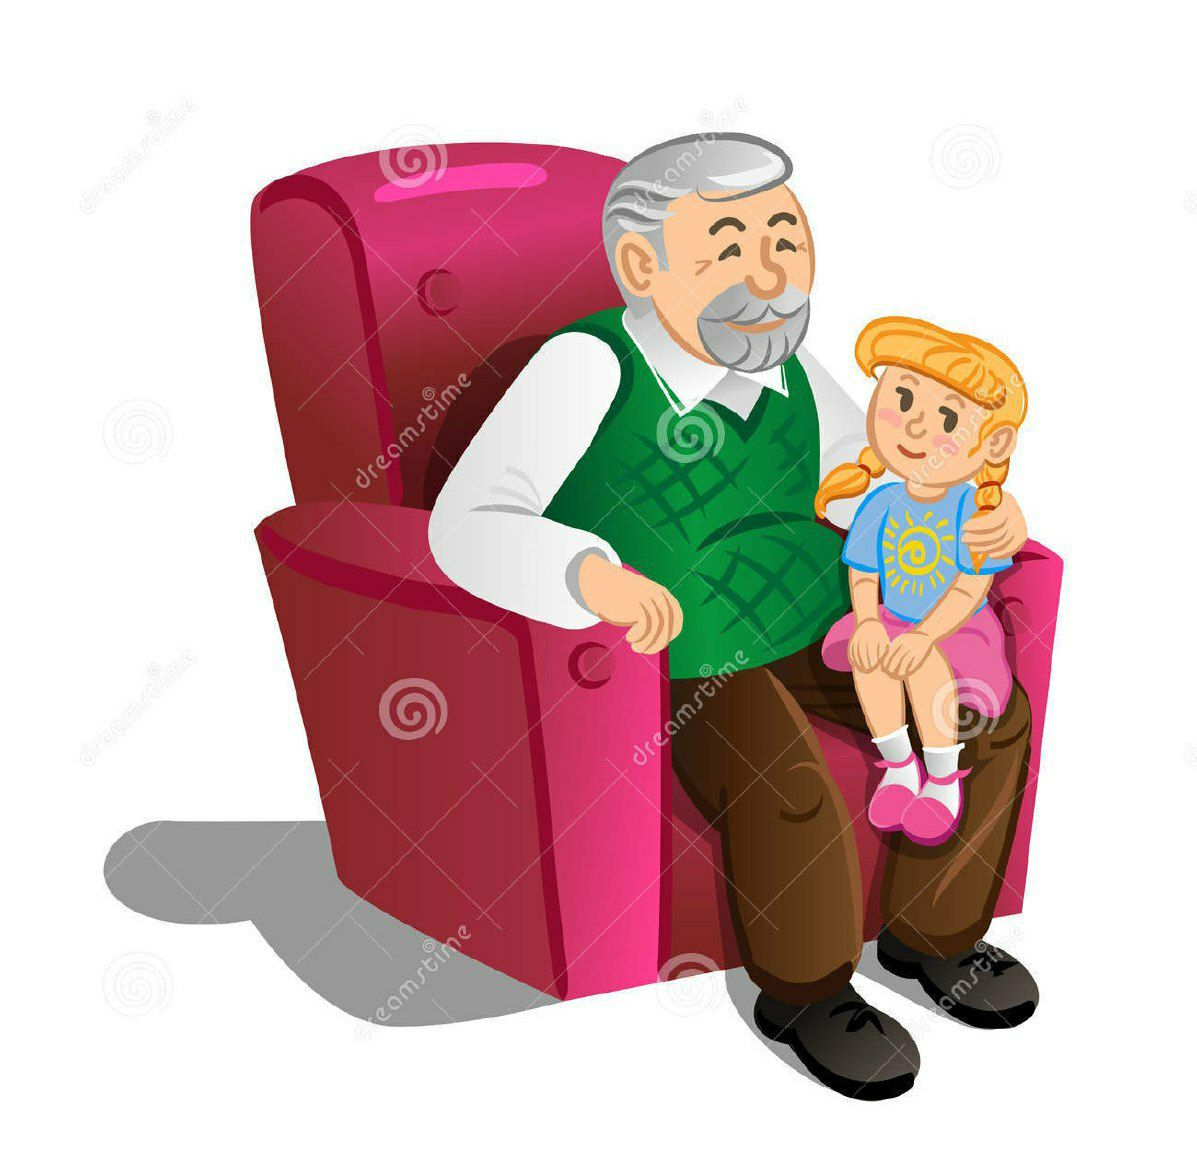 Дедушка и внучка